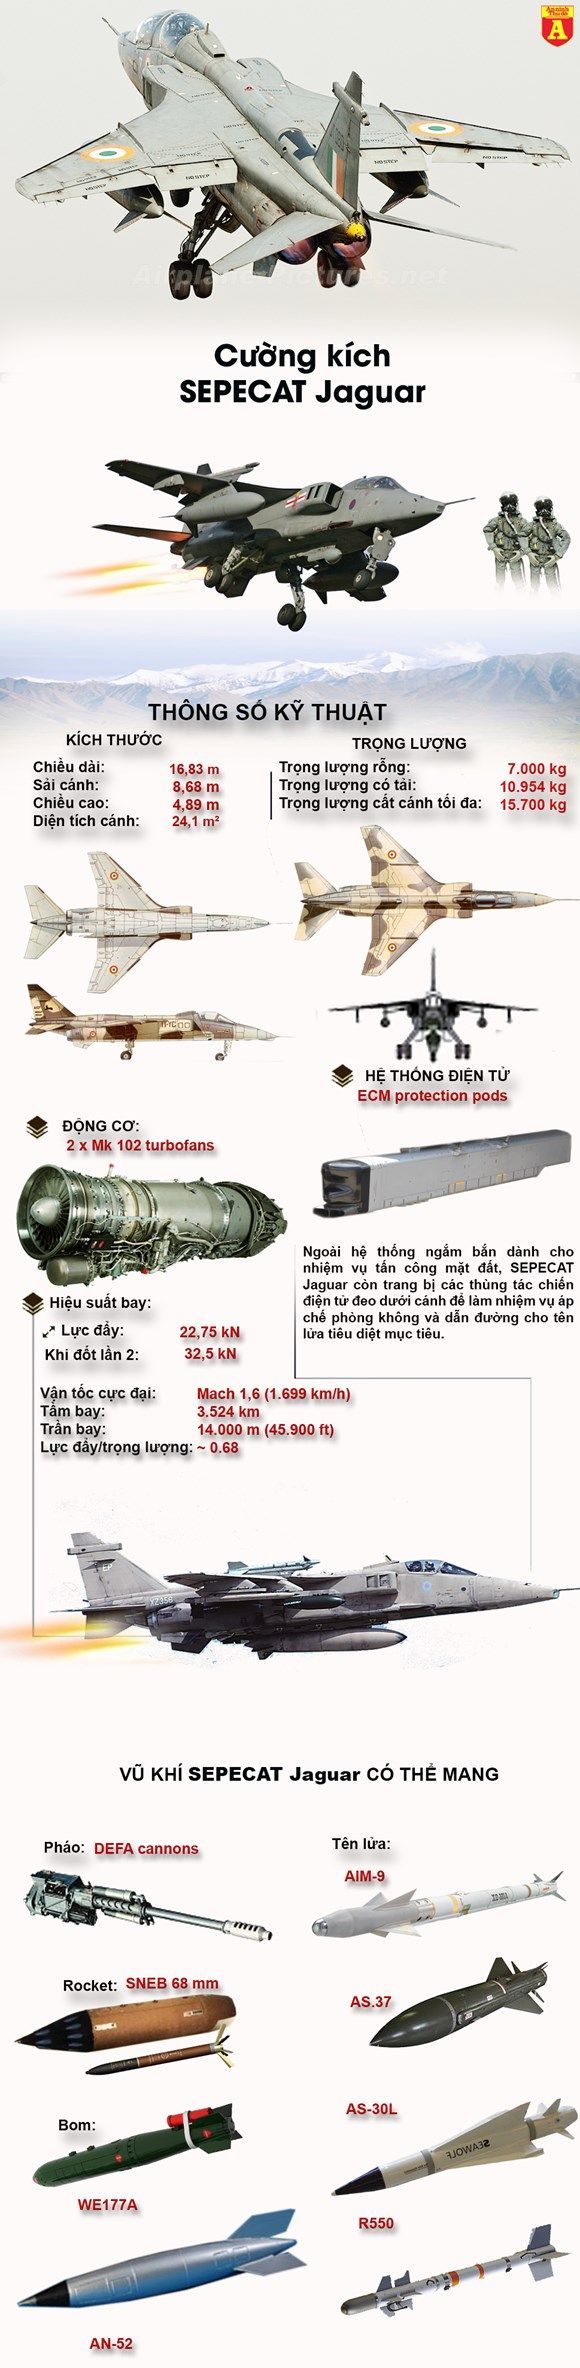 Drone Infographics : Cường kích đa nhiệm Jaguar của không quân Ấn ...